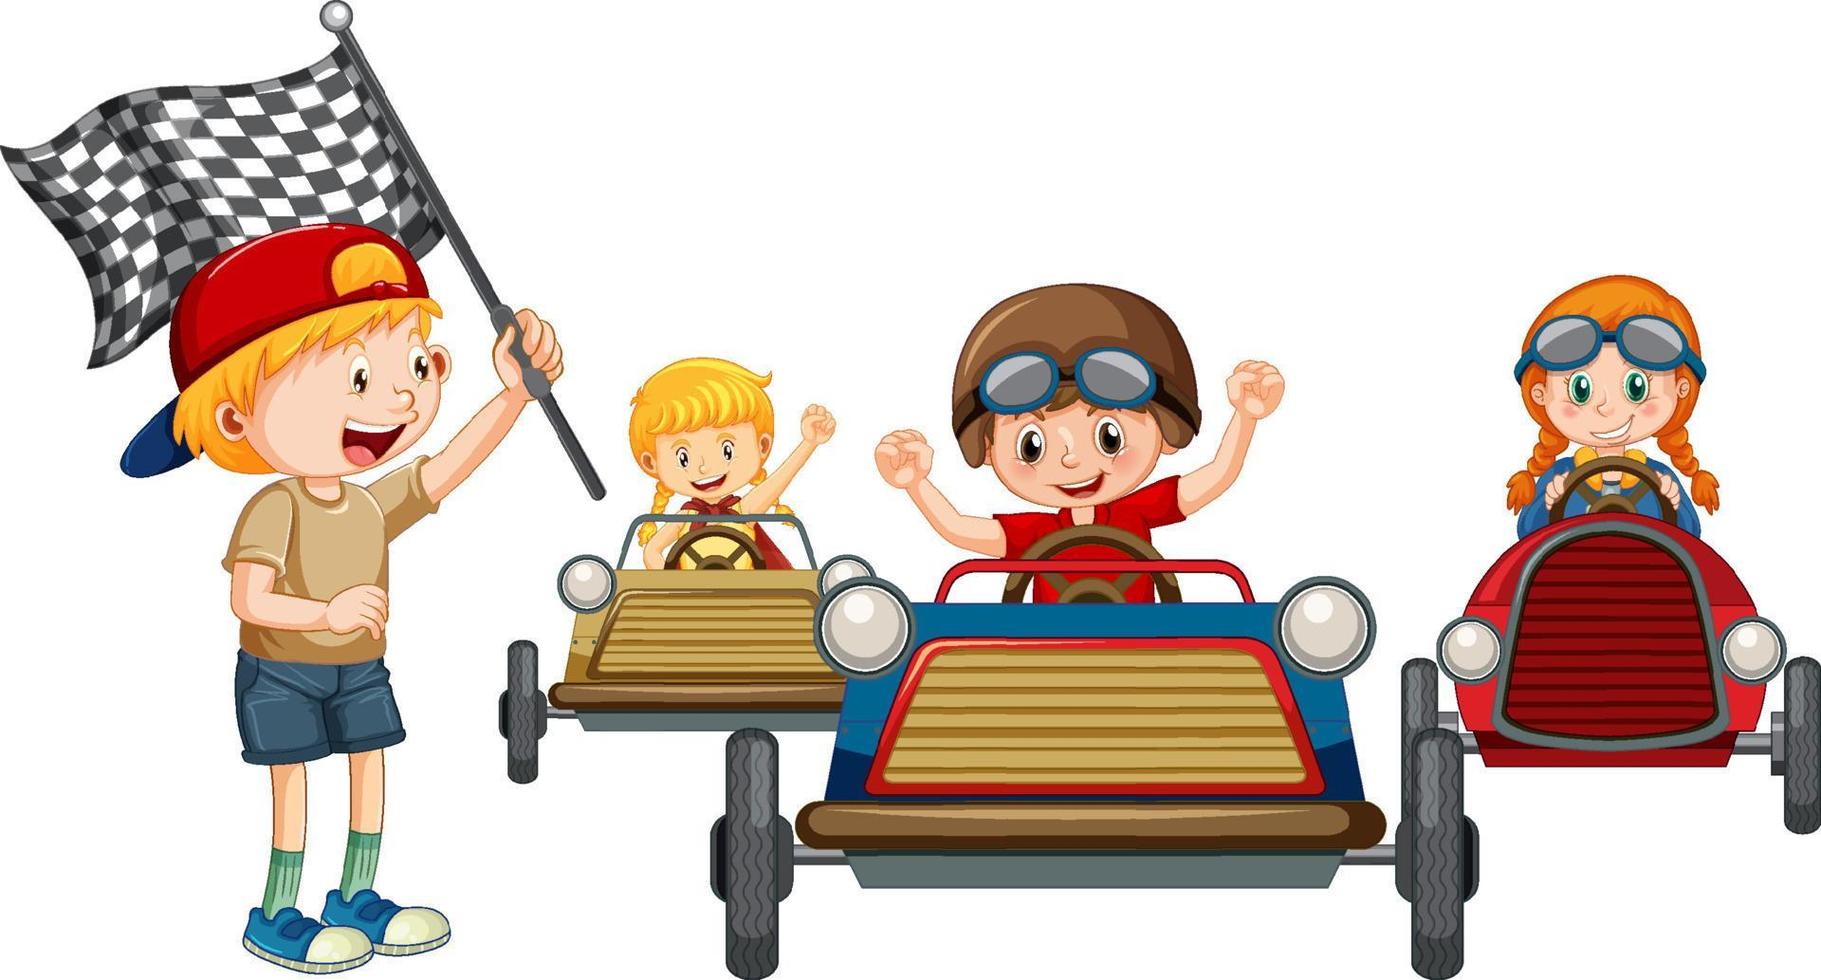 bambini che corrono insieme in macchina vettore